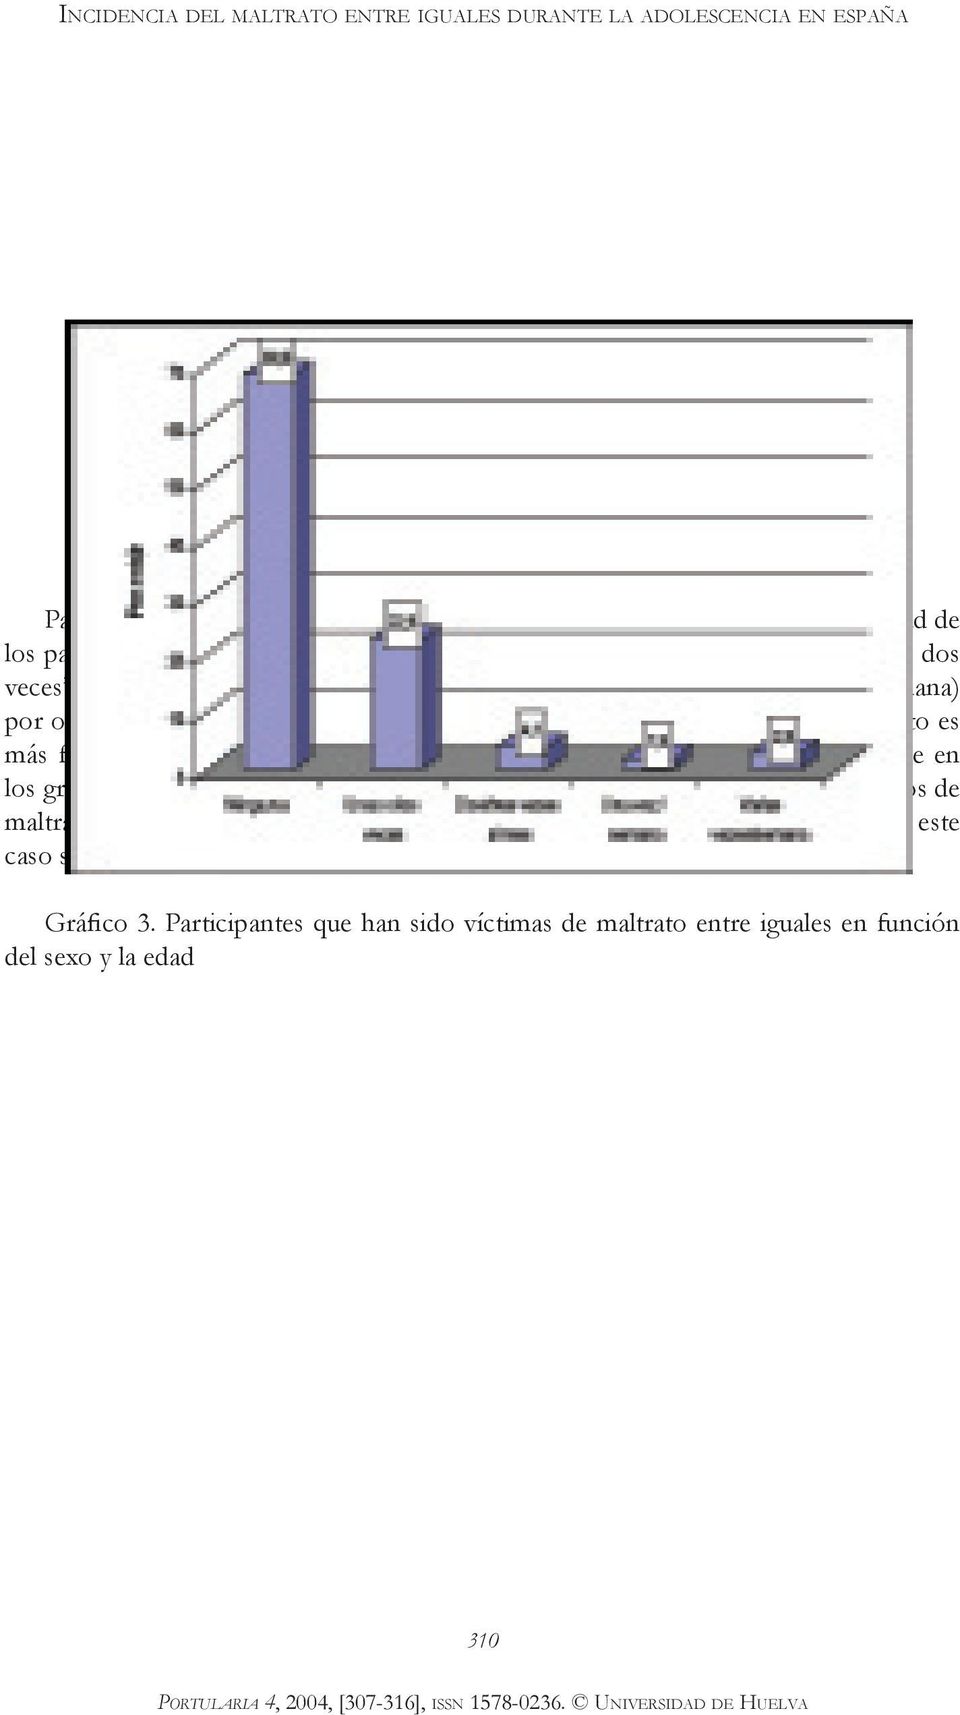 En el gráfico 3 podemos ver que el hecho de ser víctima de maltrato es más frecuente entre chicos que entre chicas, siendo un fenómeno más infrecuente en los grupos de edad superior.